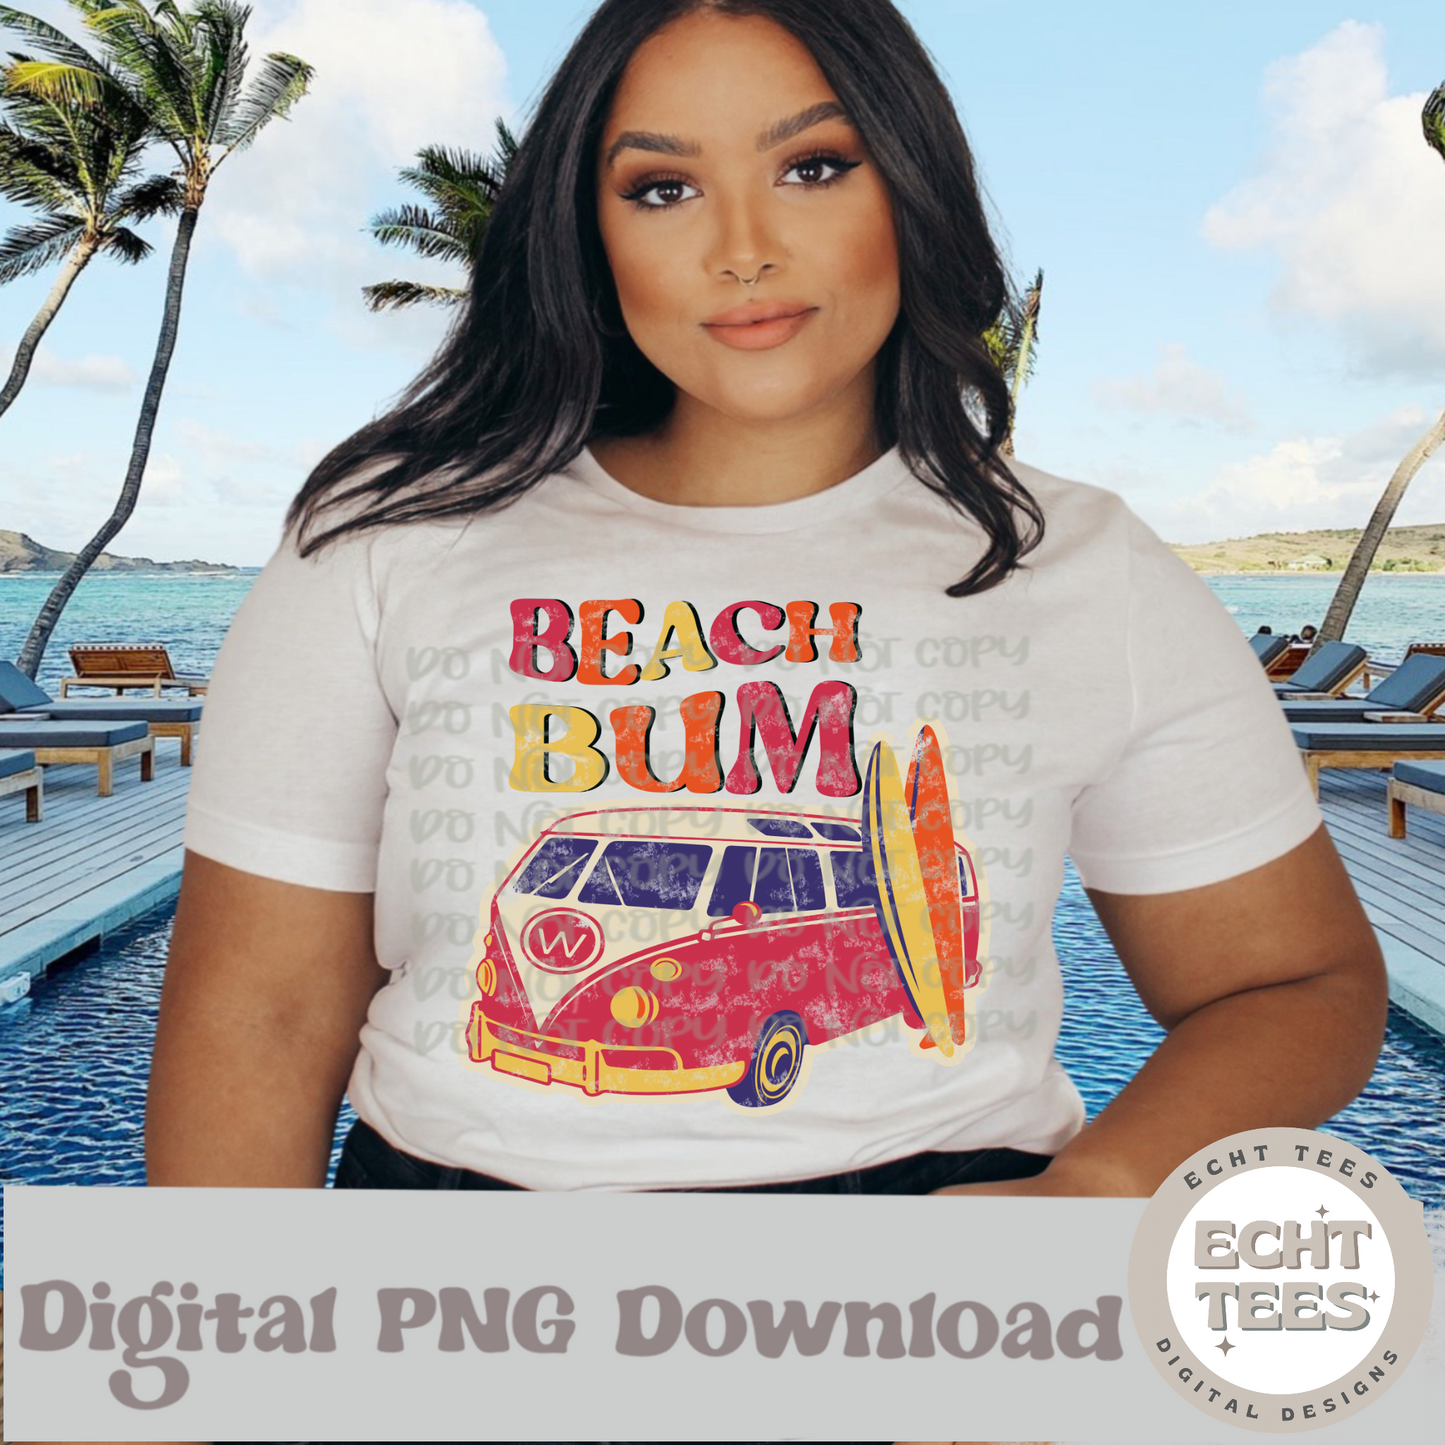 Beach Bum PNG Digital Download